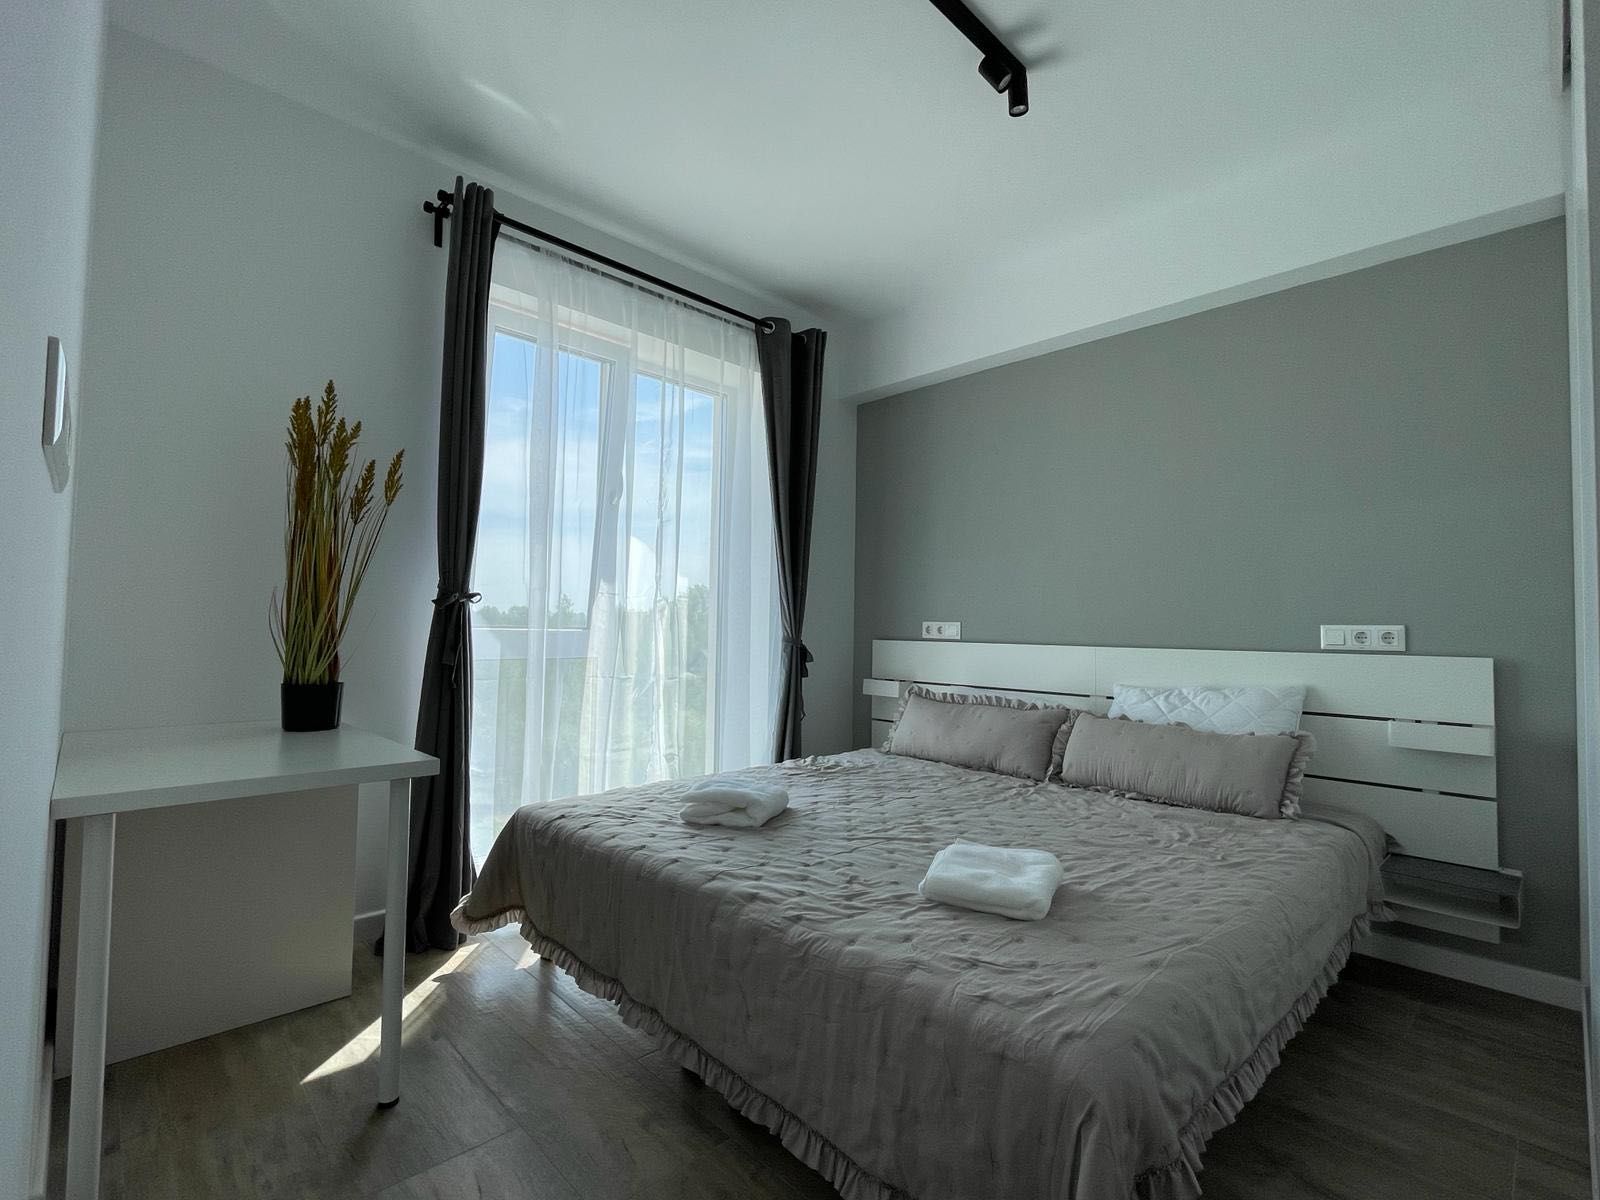 Apartament de inchiriat 3 camere in Targoviste | NOU| Vedere Parc, Rau